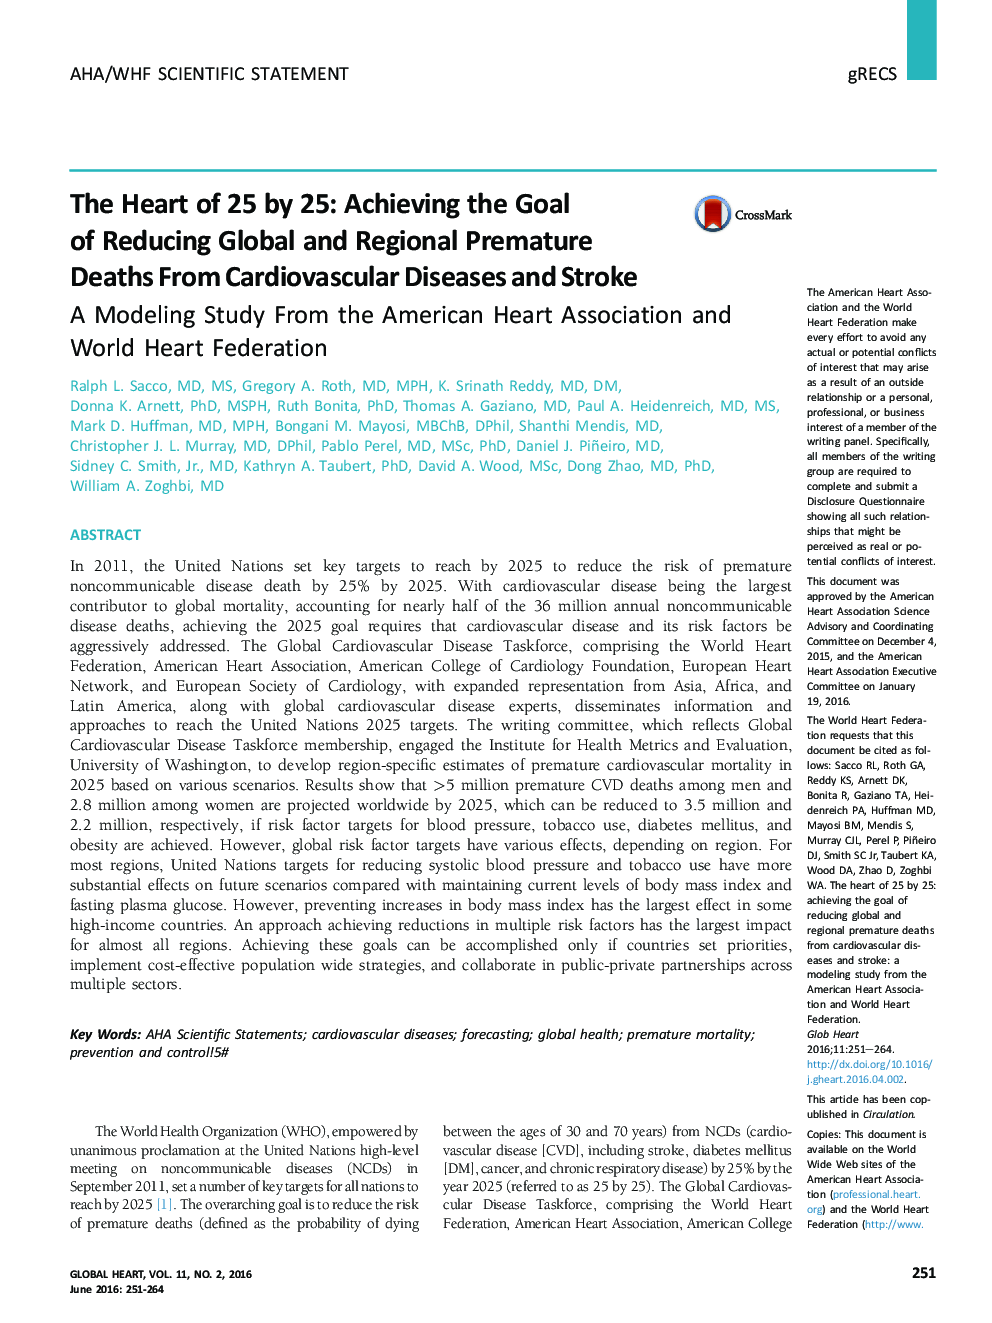 قلب 25 تا 25: دستیابی به هدف کاهش مرگ و میر ناشی از بیماری های قلبی-عروقی و سکته مغزی در جهان و منطقه: مطالعات مدلسازی از انجمن قلب آمریکا و فدراسیون قلب جهانی 